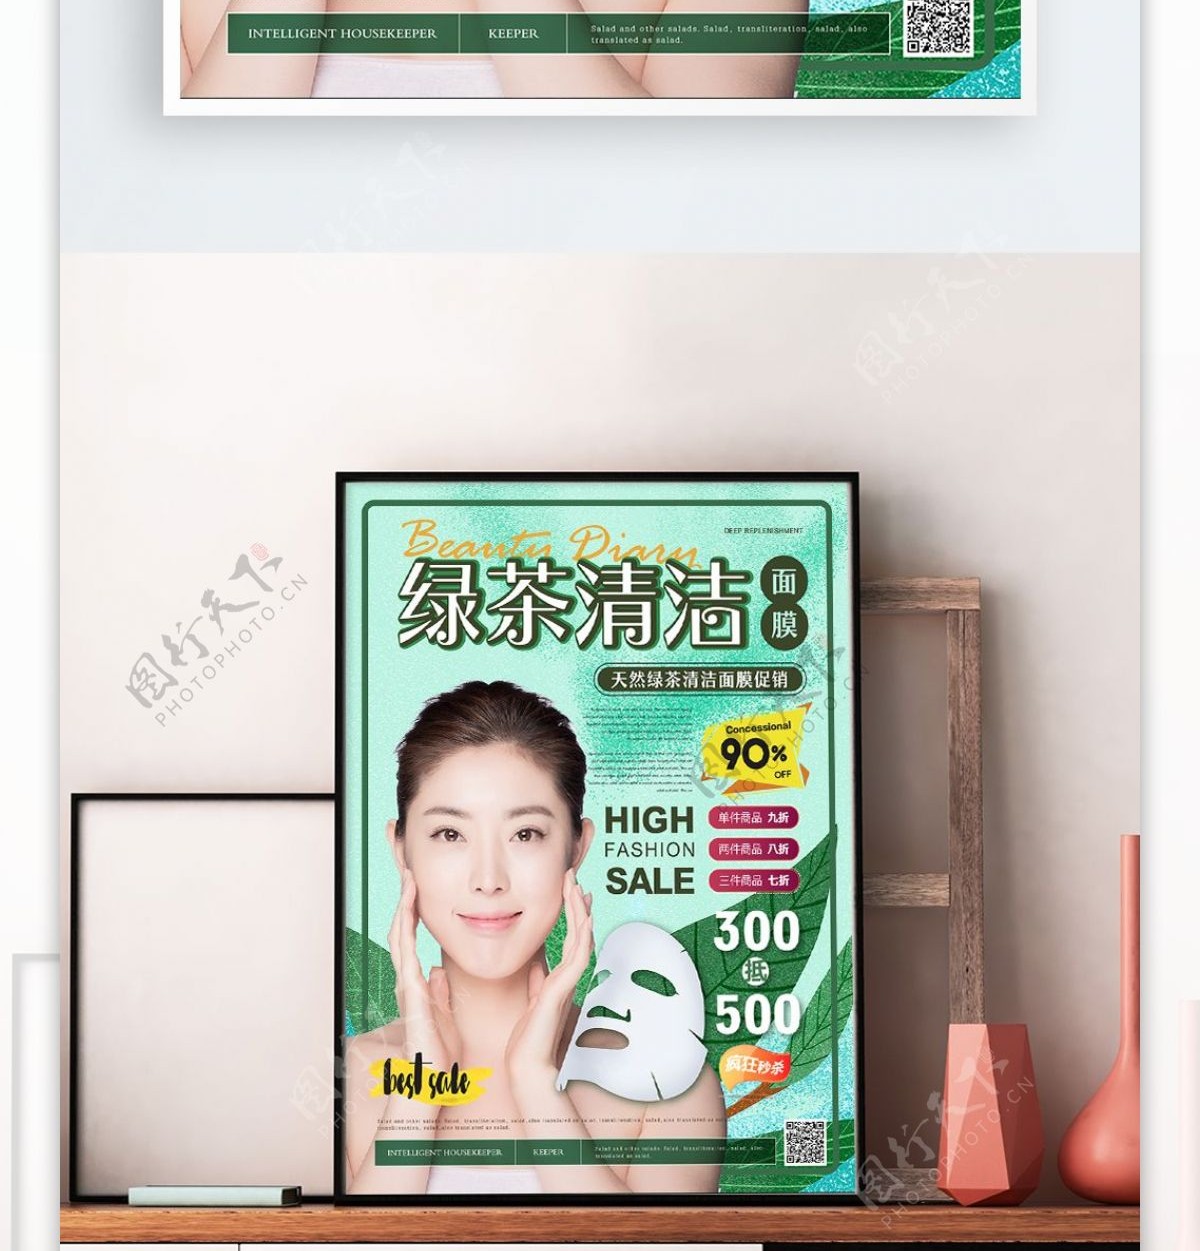 简约清新绿茶清洁面膜促销海报